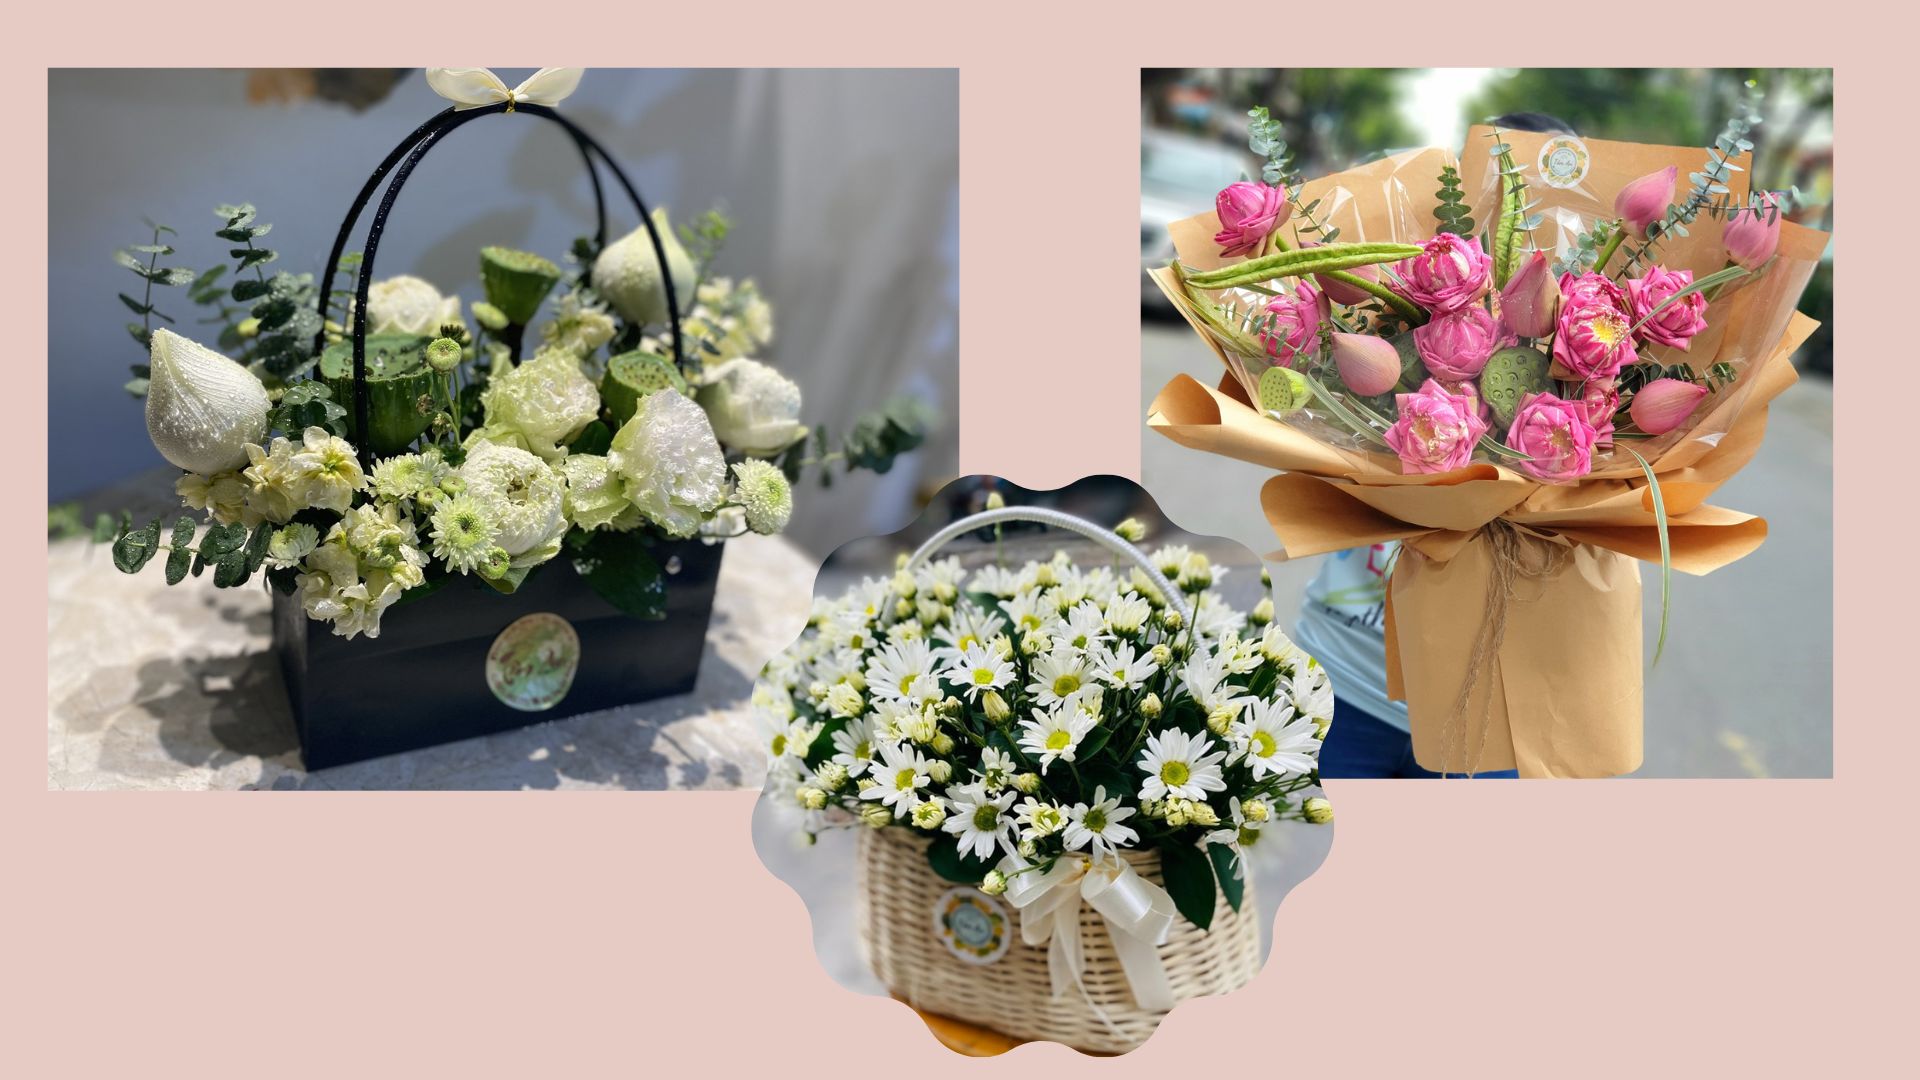 Hoa tươi Tâm An - Cửa hàng hoa tươi chất lượng tại Đà Nẵng